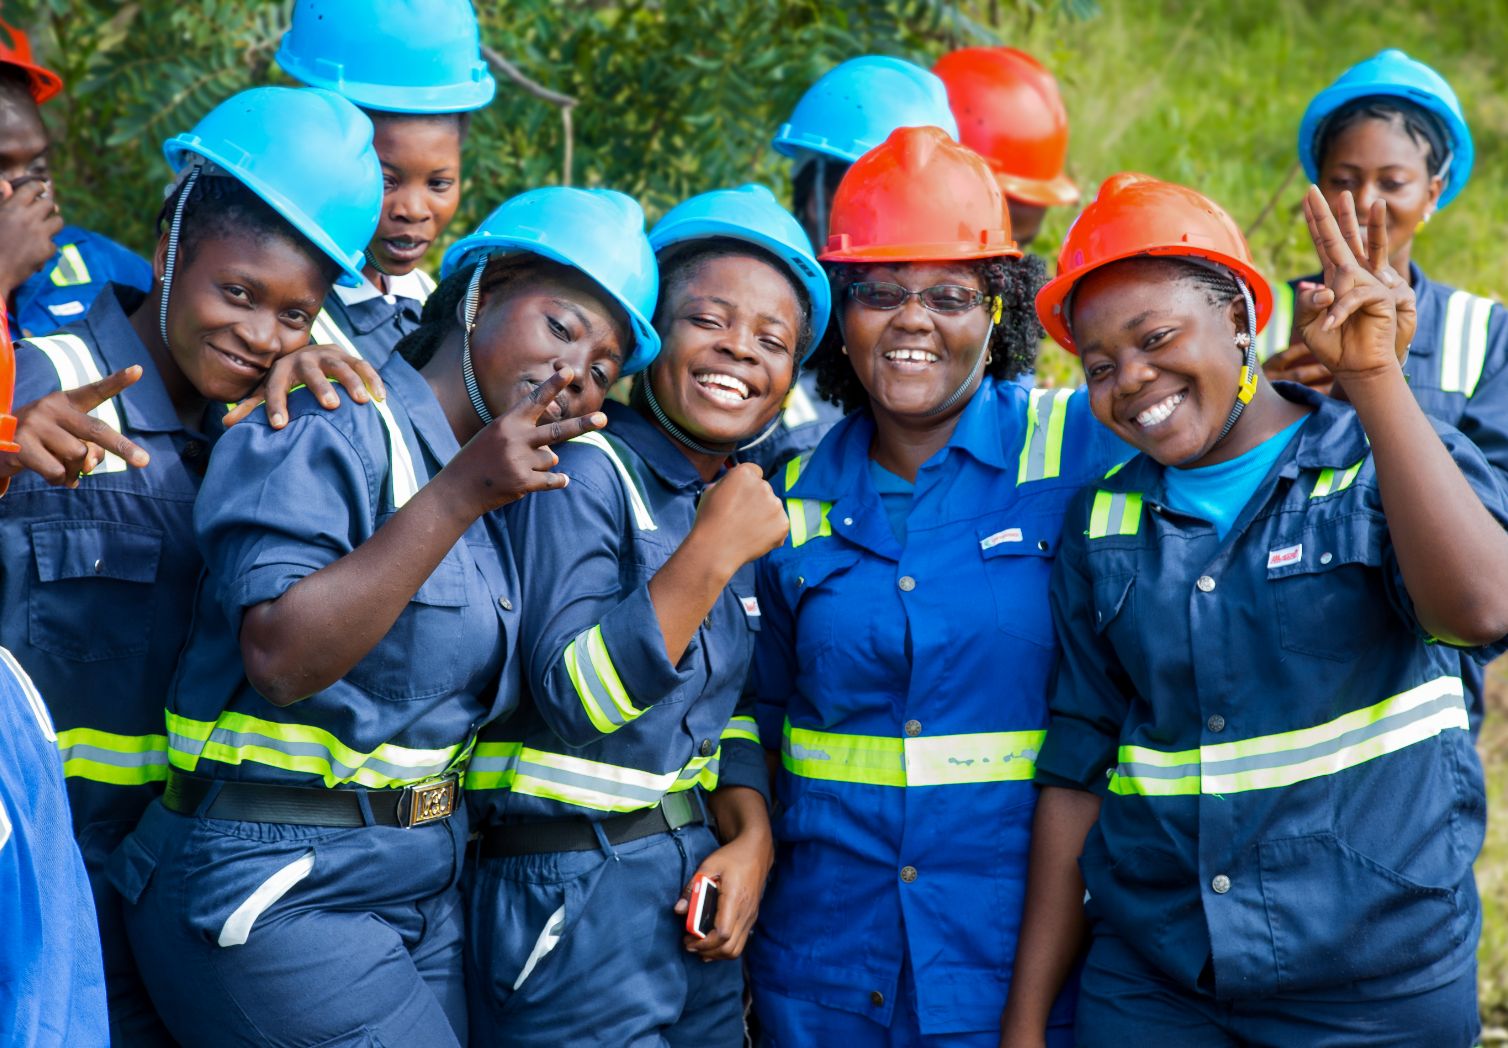 Gruppenfoto: Mehrere Frauen in Arbeitskleidungen und mit Helmen lächeln.